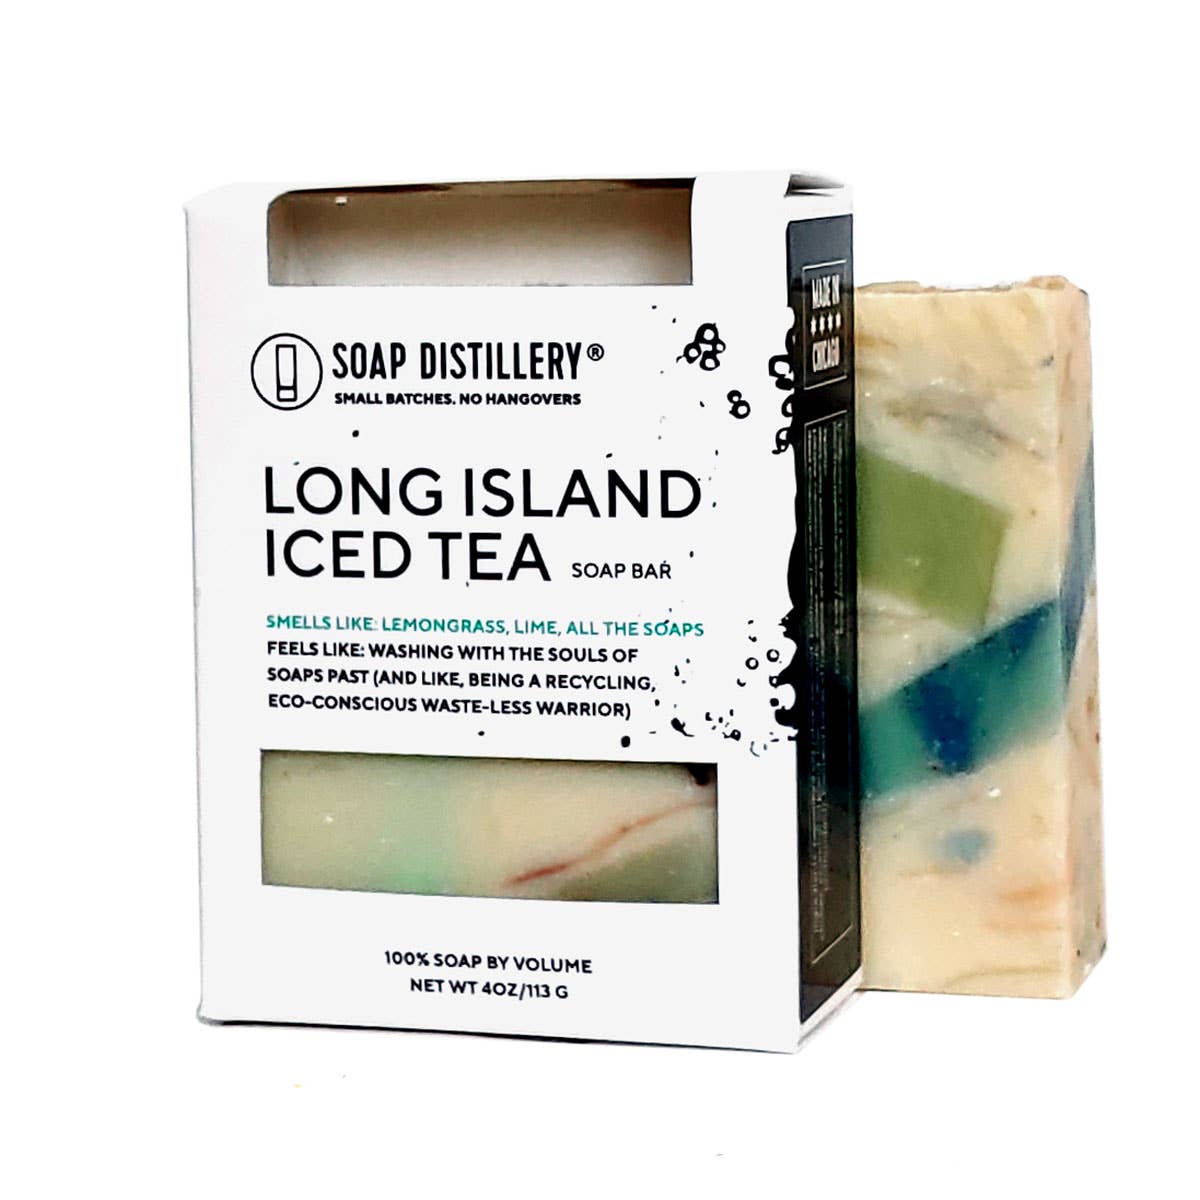 SALE! Long Island Iced Tea Soap Bar